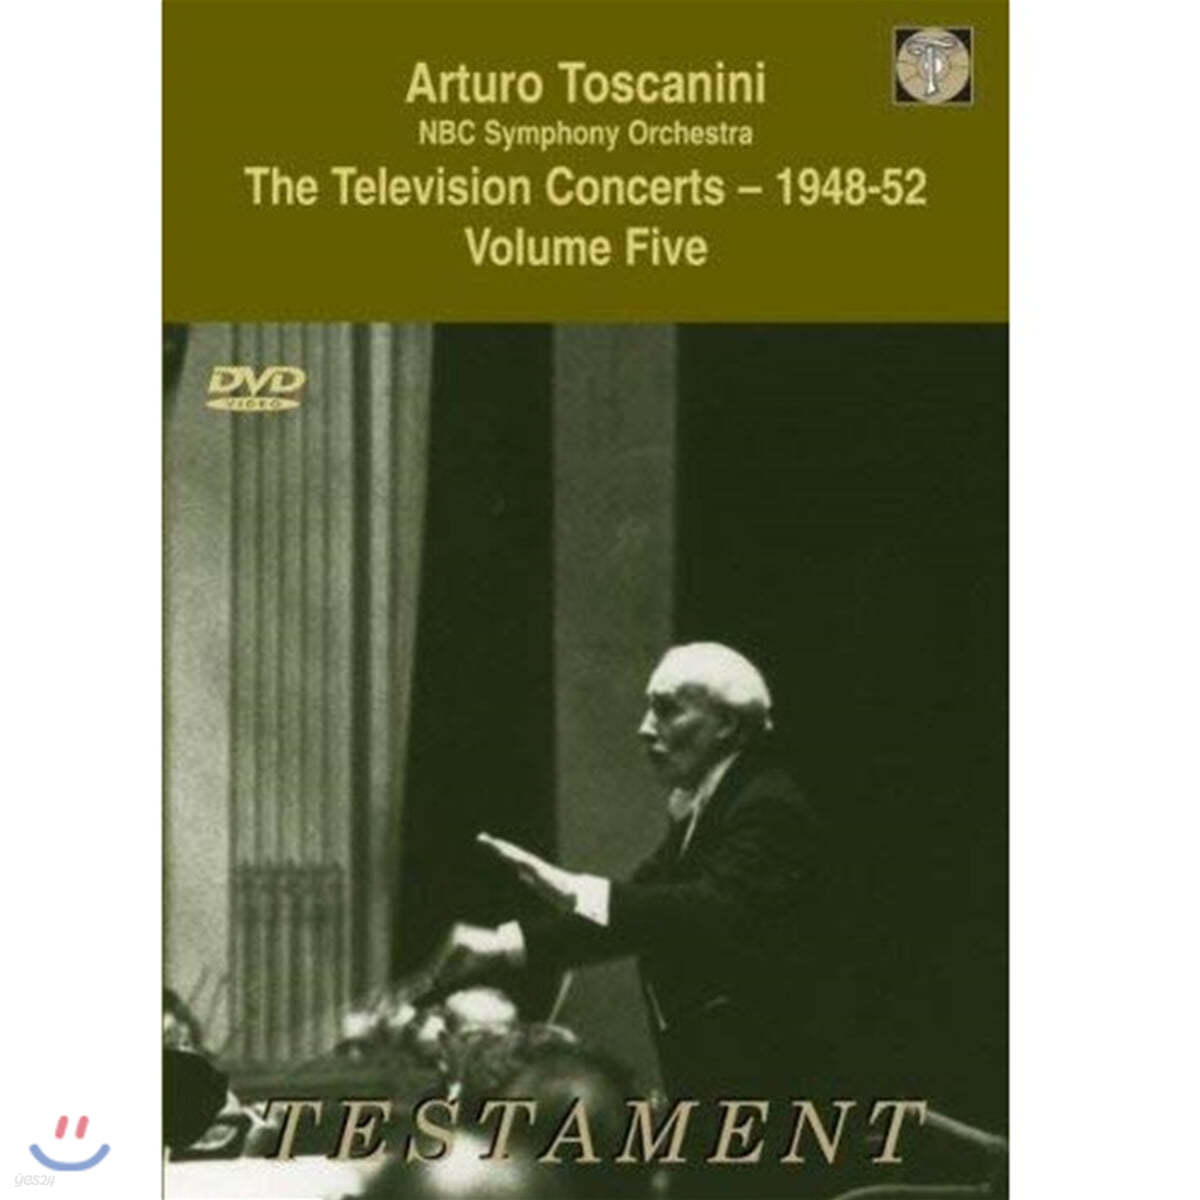 아르투로 토스카니니 1948-52년 텔레비전 콘서트 5집 (Arturo Toscanini: The Television Concerts - 1948-52 Vol. 5)